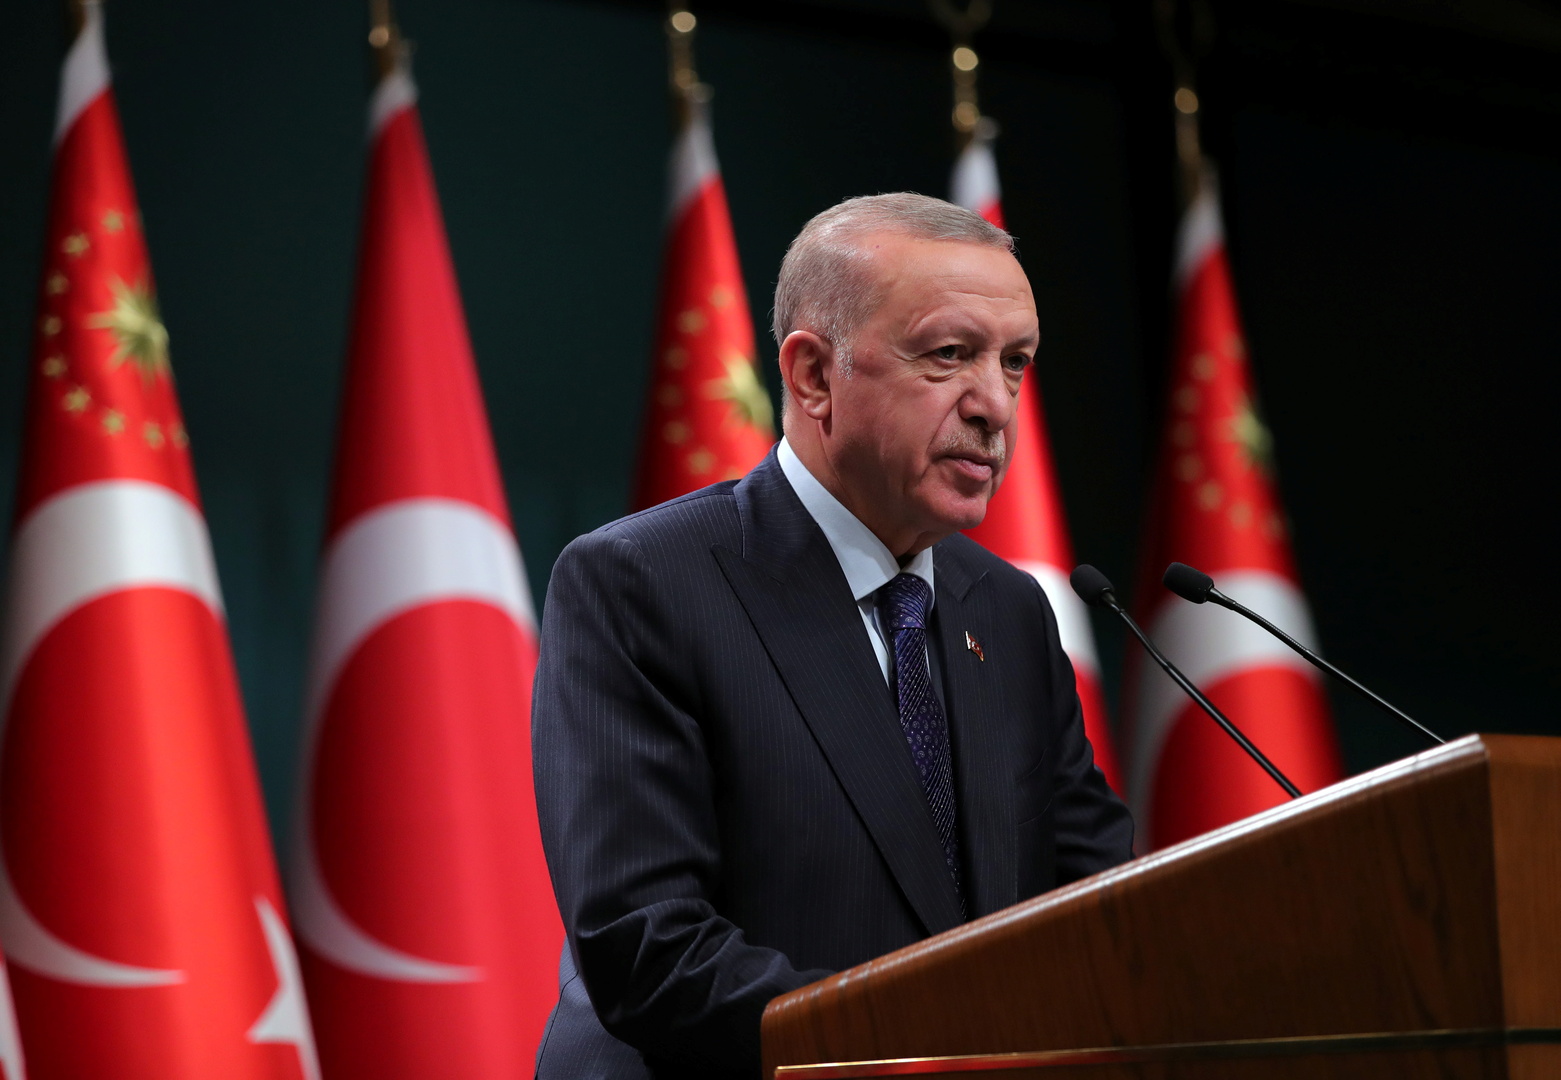 أردوغان: مجلس الأمن الدولي شكل خيبة أمل كبيرة لعدم قيامه بمسؤولياته في الأزمة السورية